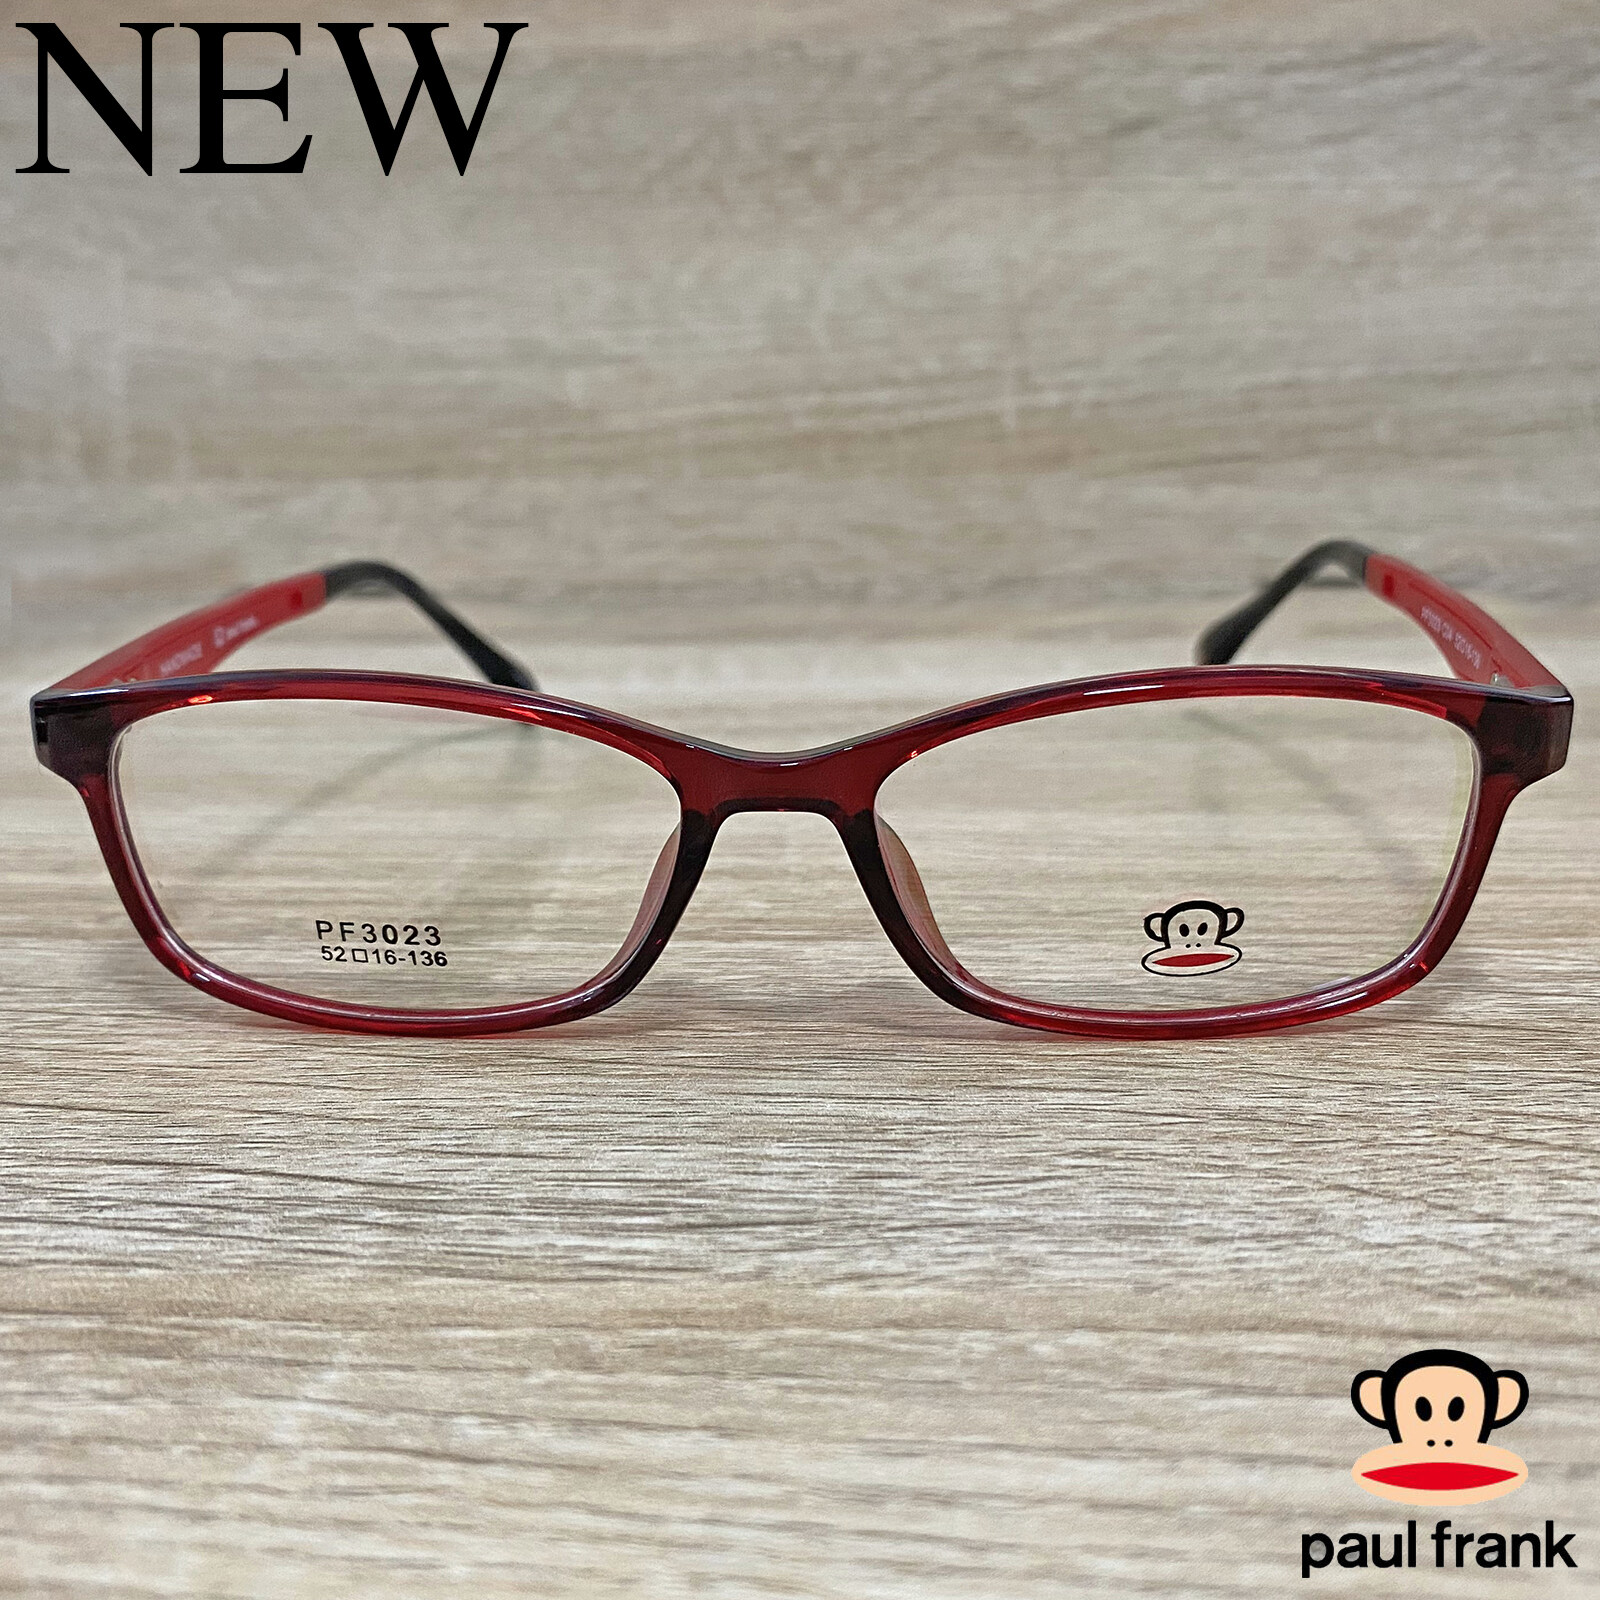 Fashion กรอบแว่นตา สำหรับตัดเลนส์ แว่นตาชาย หญิง แว่นตา รุ่น Paul Frank 3023 สีแดง กรอบเต็ม ทรงเหลี่ยม ขาข้อต่อ วัสดุ TR 90 รับตัดเลนส์ทุกชนิด